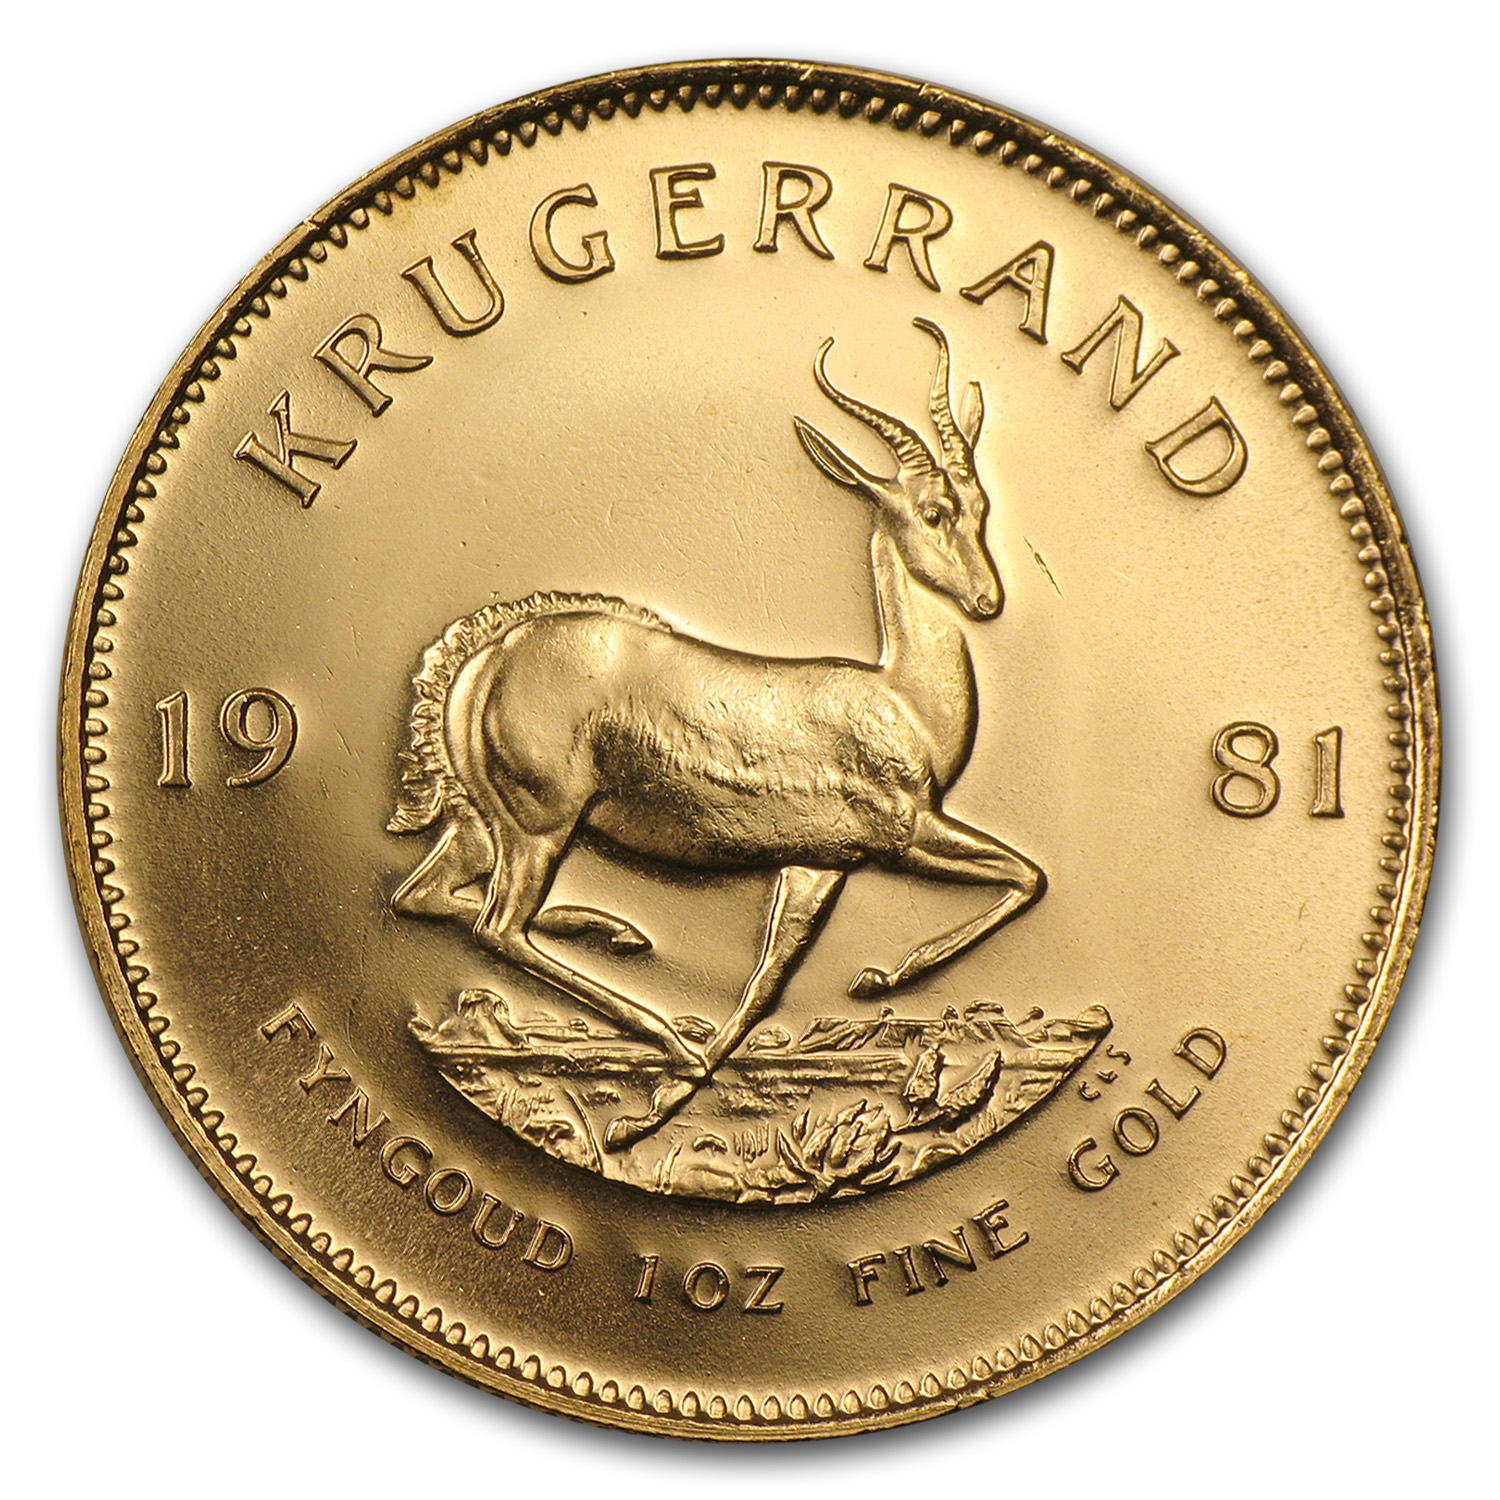 Buy 1981 South Africa 1 oz Gold Krugerrand BU